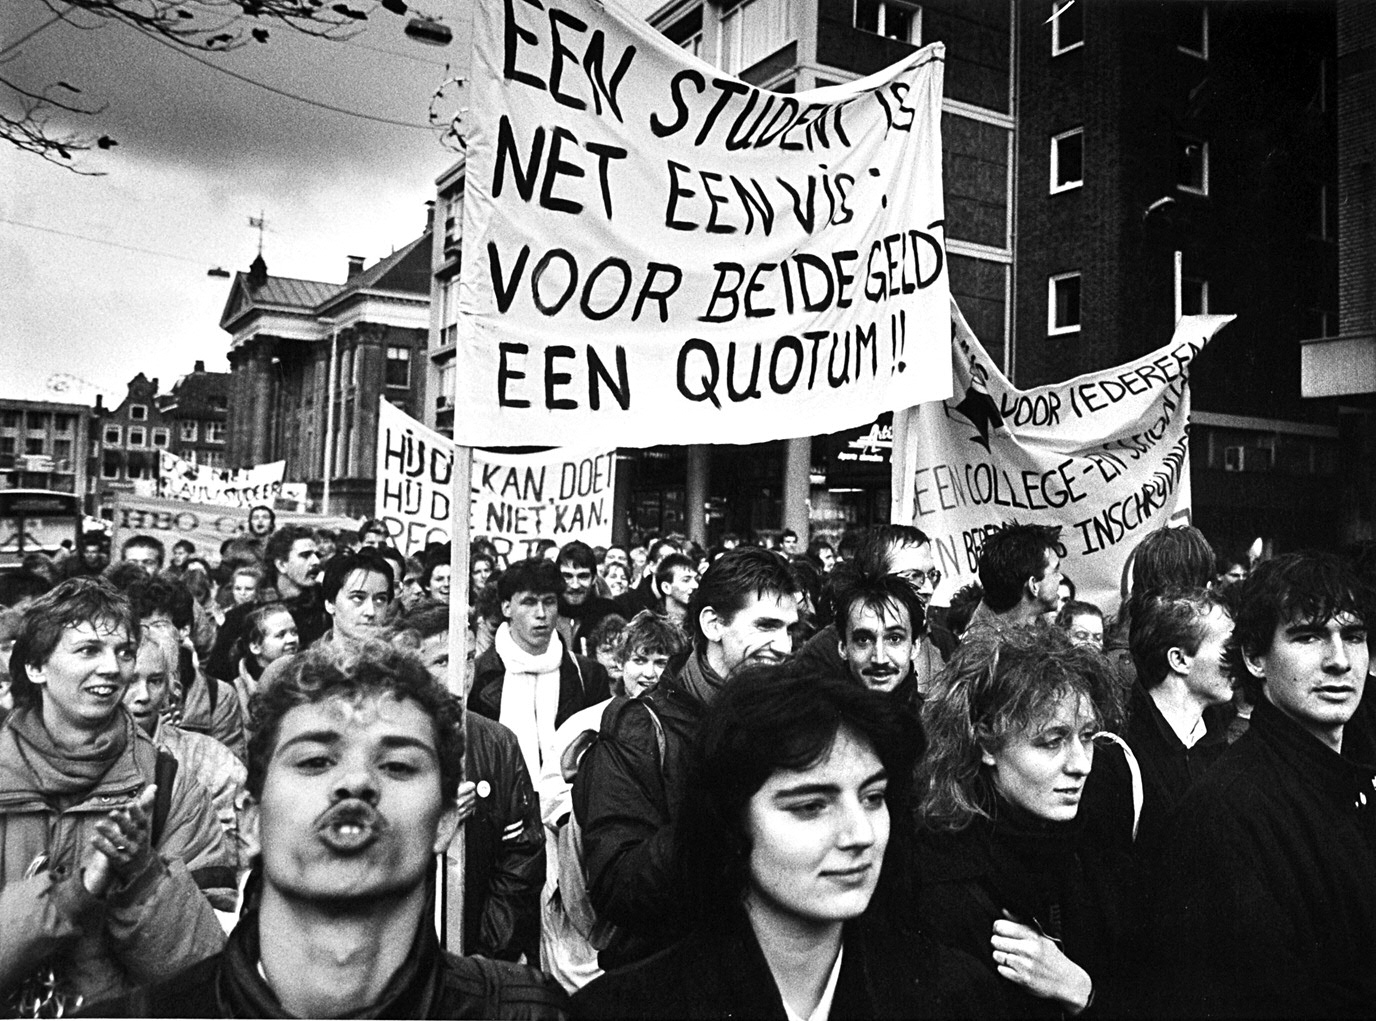 Studentenprotest in de jaren '80Student protests in the 1980s